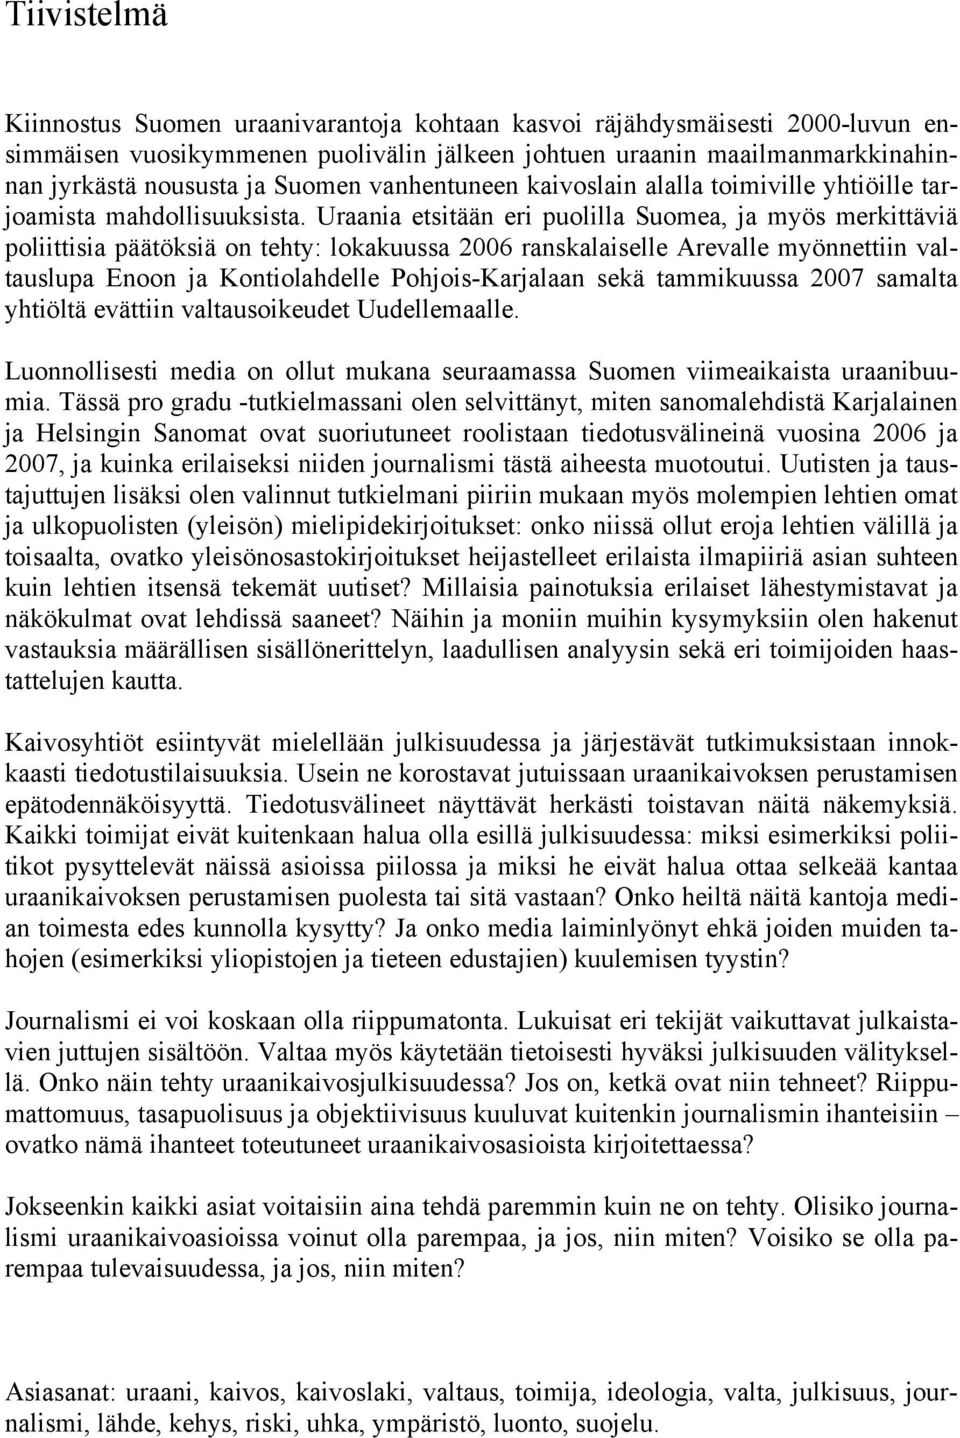 Uraania etsitään eri puolilla Suomea, ja myös merkittäviä poliittisia päätöksiä on tehty: lokakuussa 2006 ranskalaiselle Arevalle myönnettiin valtauslupa Enoon ja Kontiolahdelle Pohjois-Karjalaan